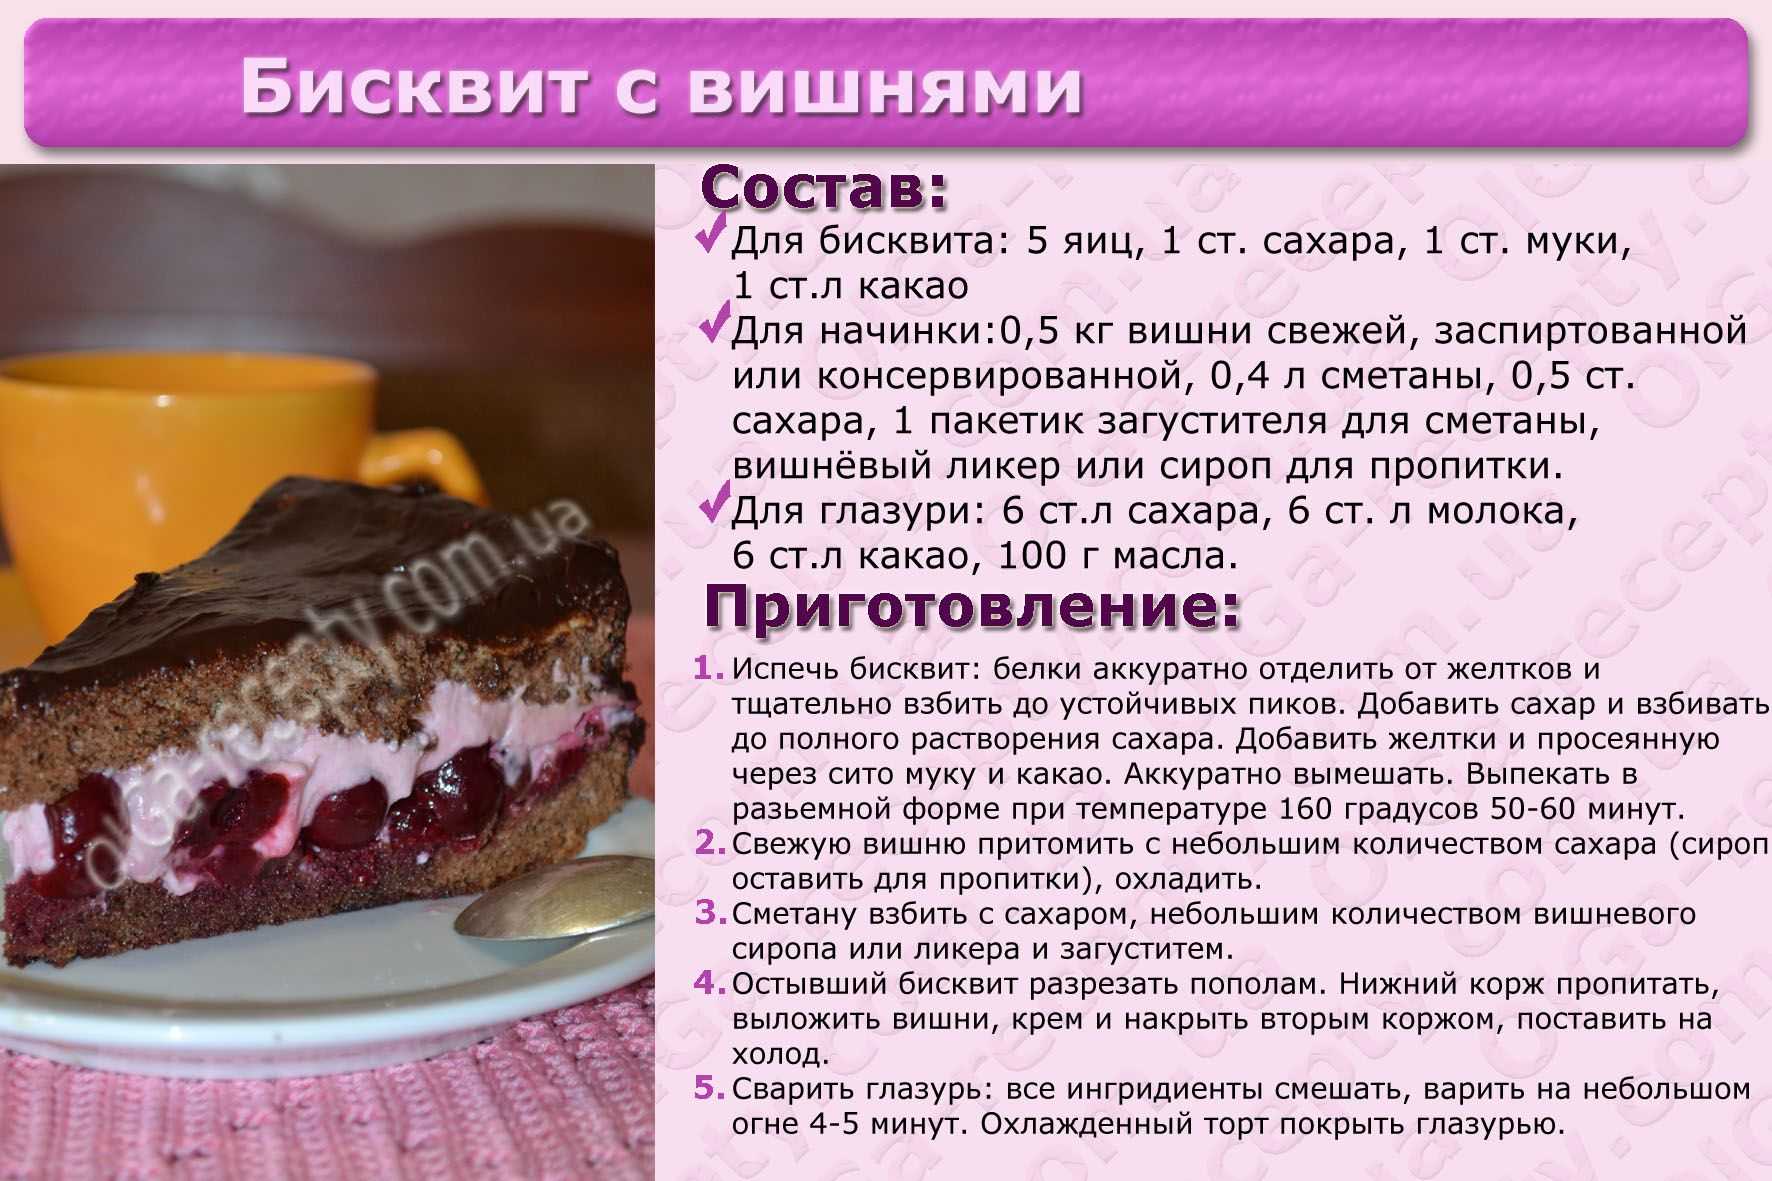 Рецепты тортов с описанием. Простой рецепт торта. Картинки с рецептами тортов. Кулинарные рецепты тортов с фотографиями. Напечатанные рецепты